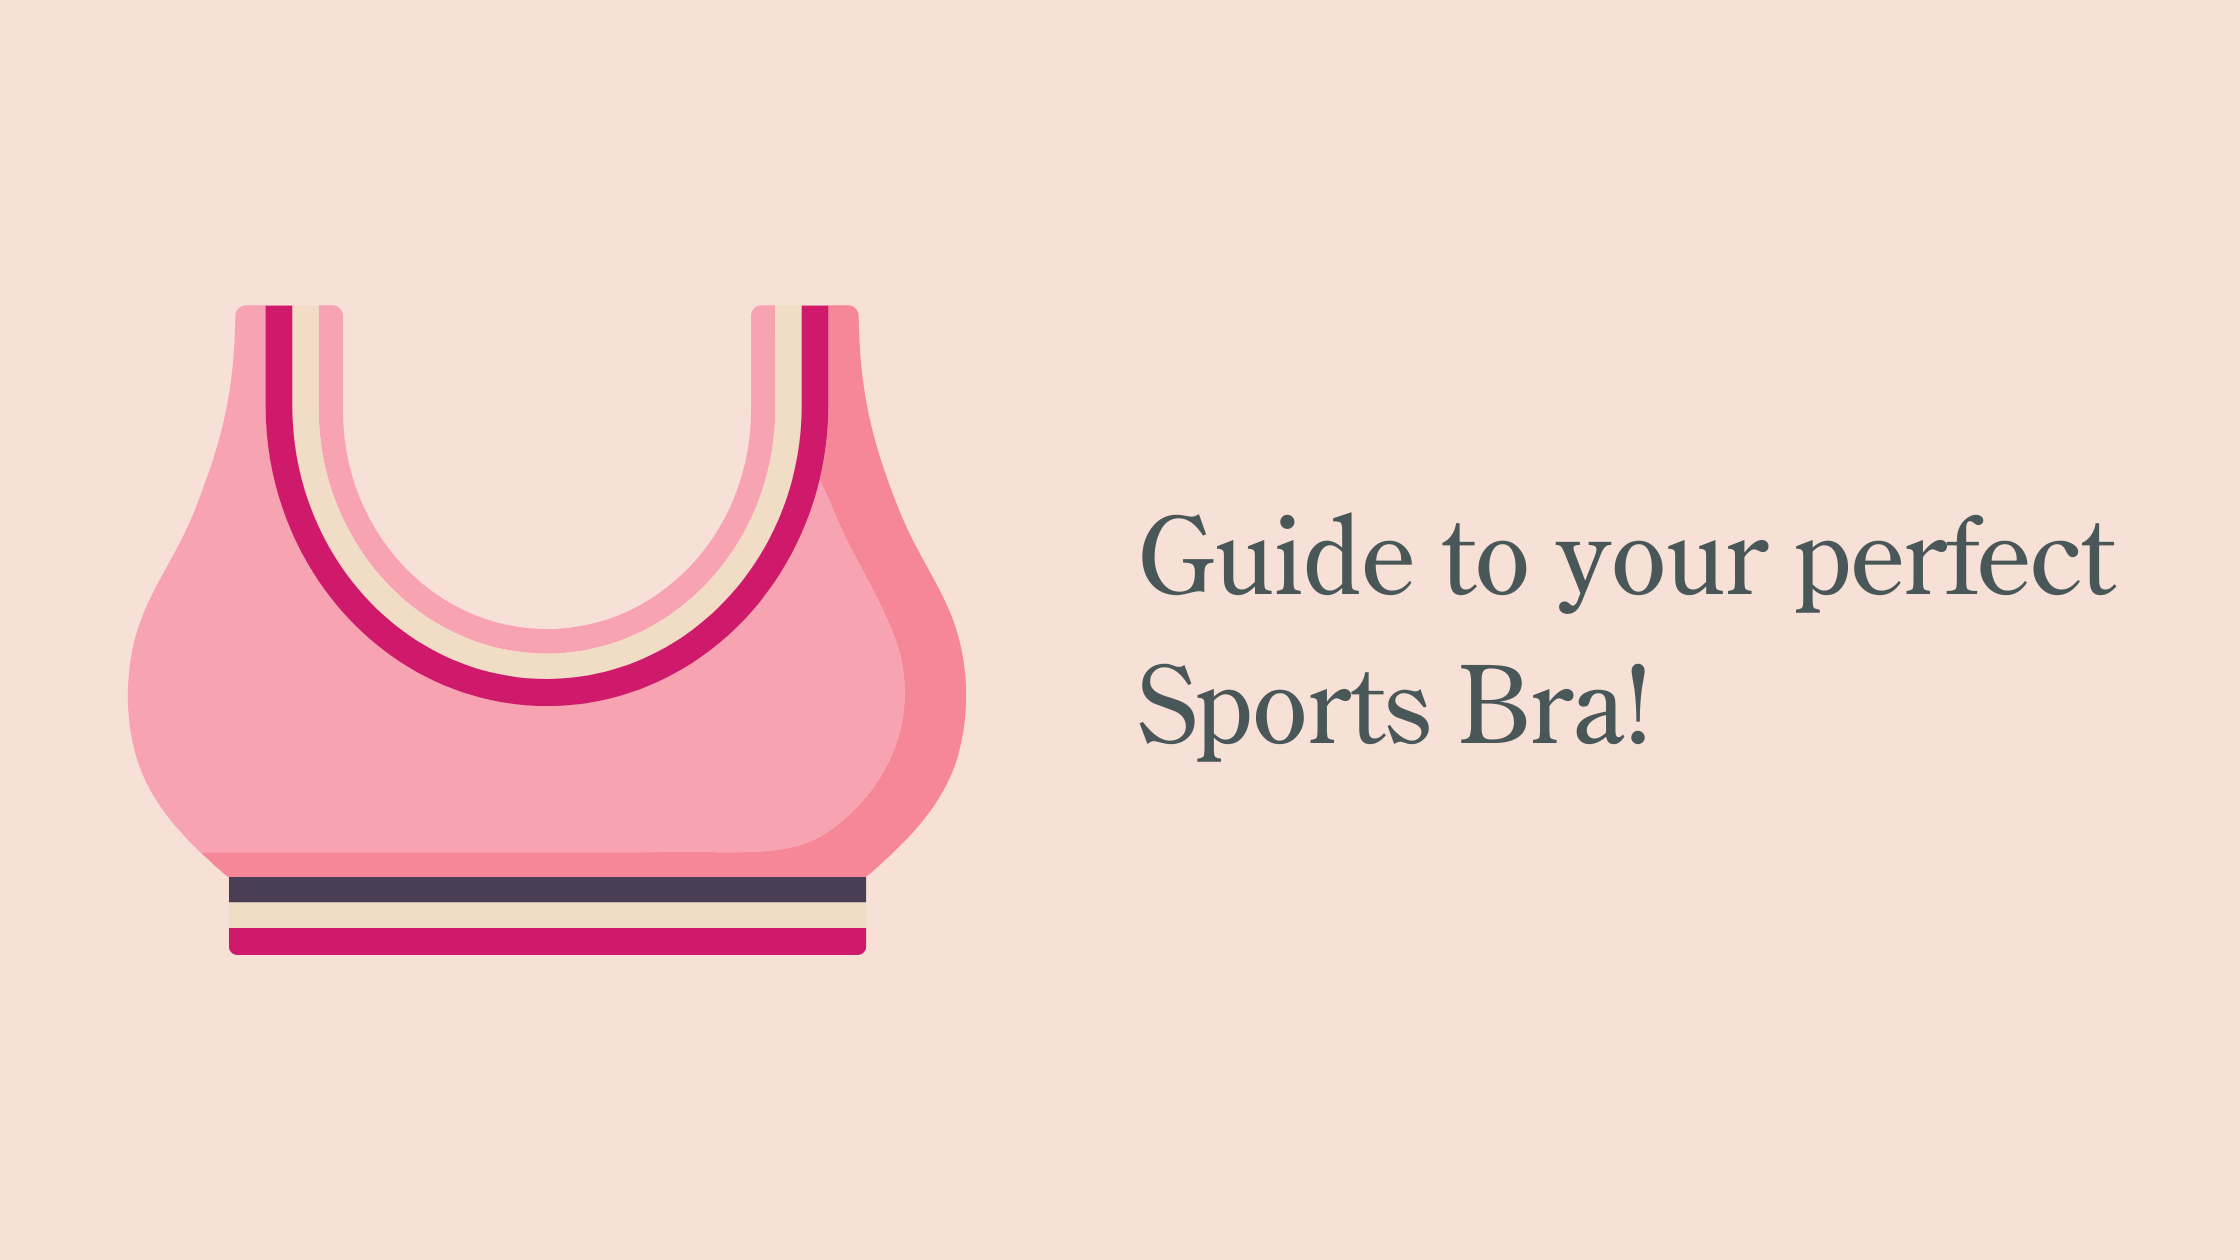 Sports Bra Guide